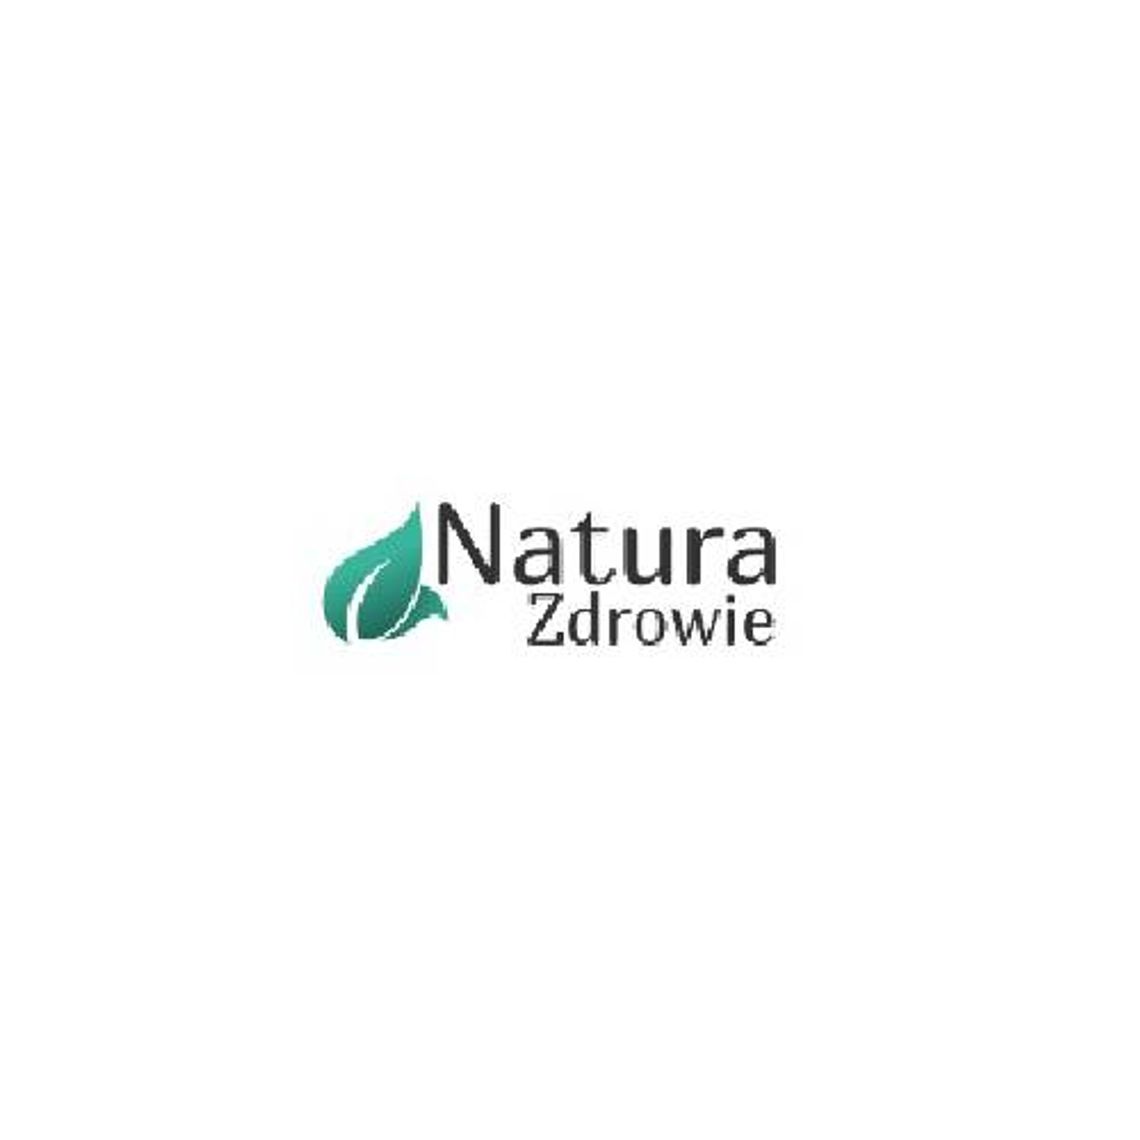 Naturazdrowie.pl - suplementy diety, kosmetyki naturalne